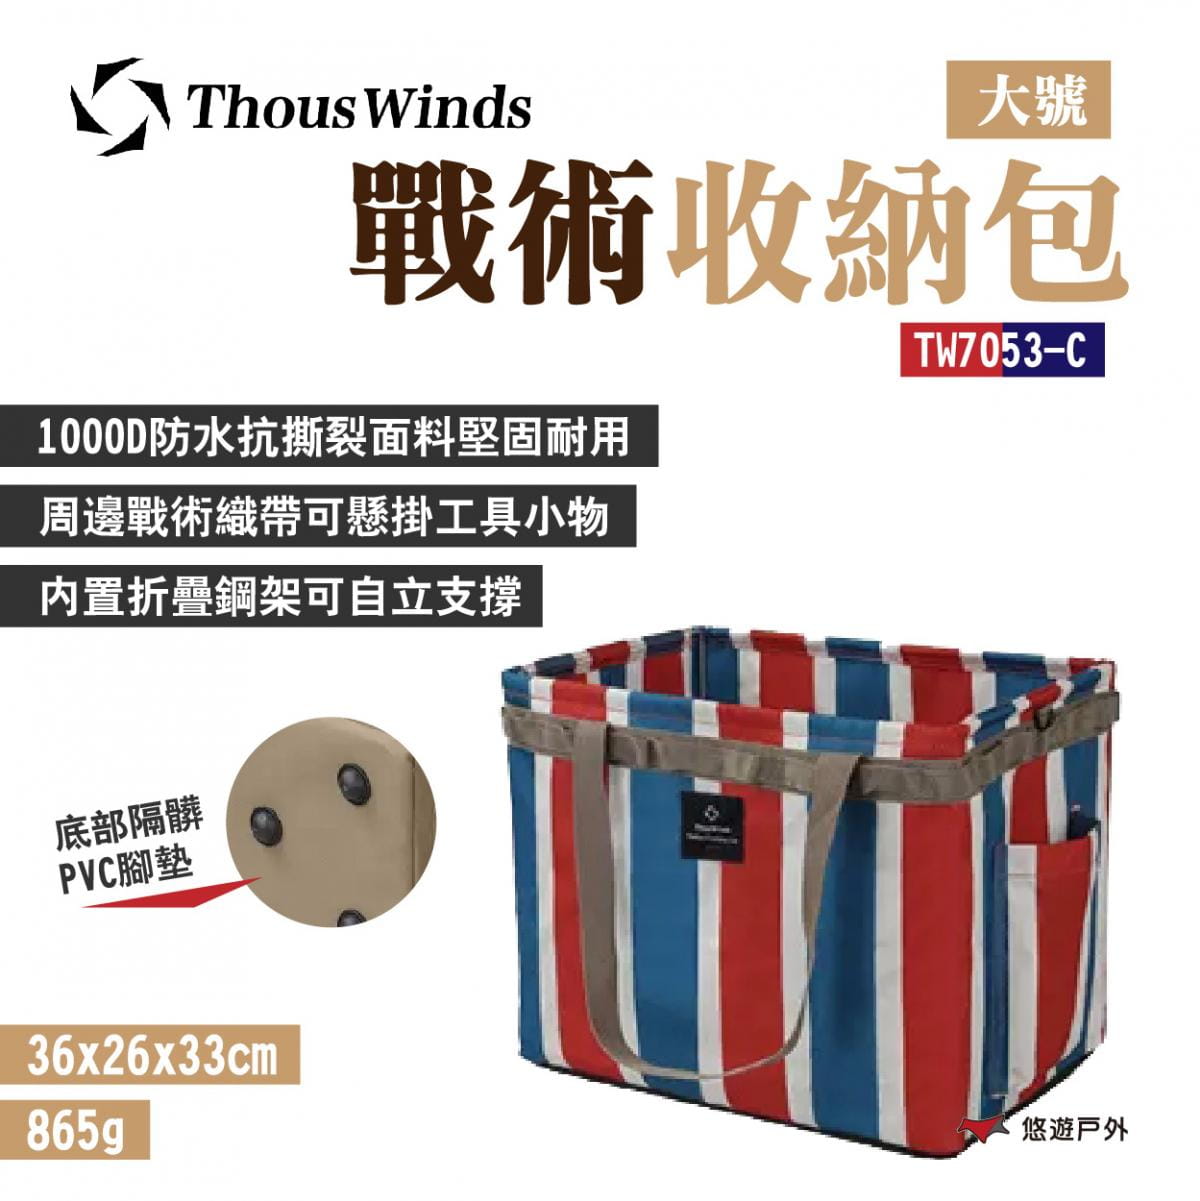 【Thous Winds】戰術收納包大號L TW7053-C 紅藍白 (悠遊戶外) 0